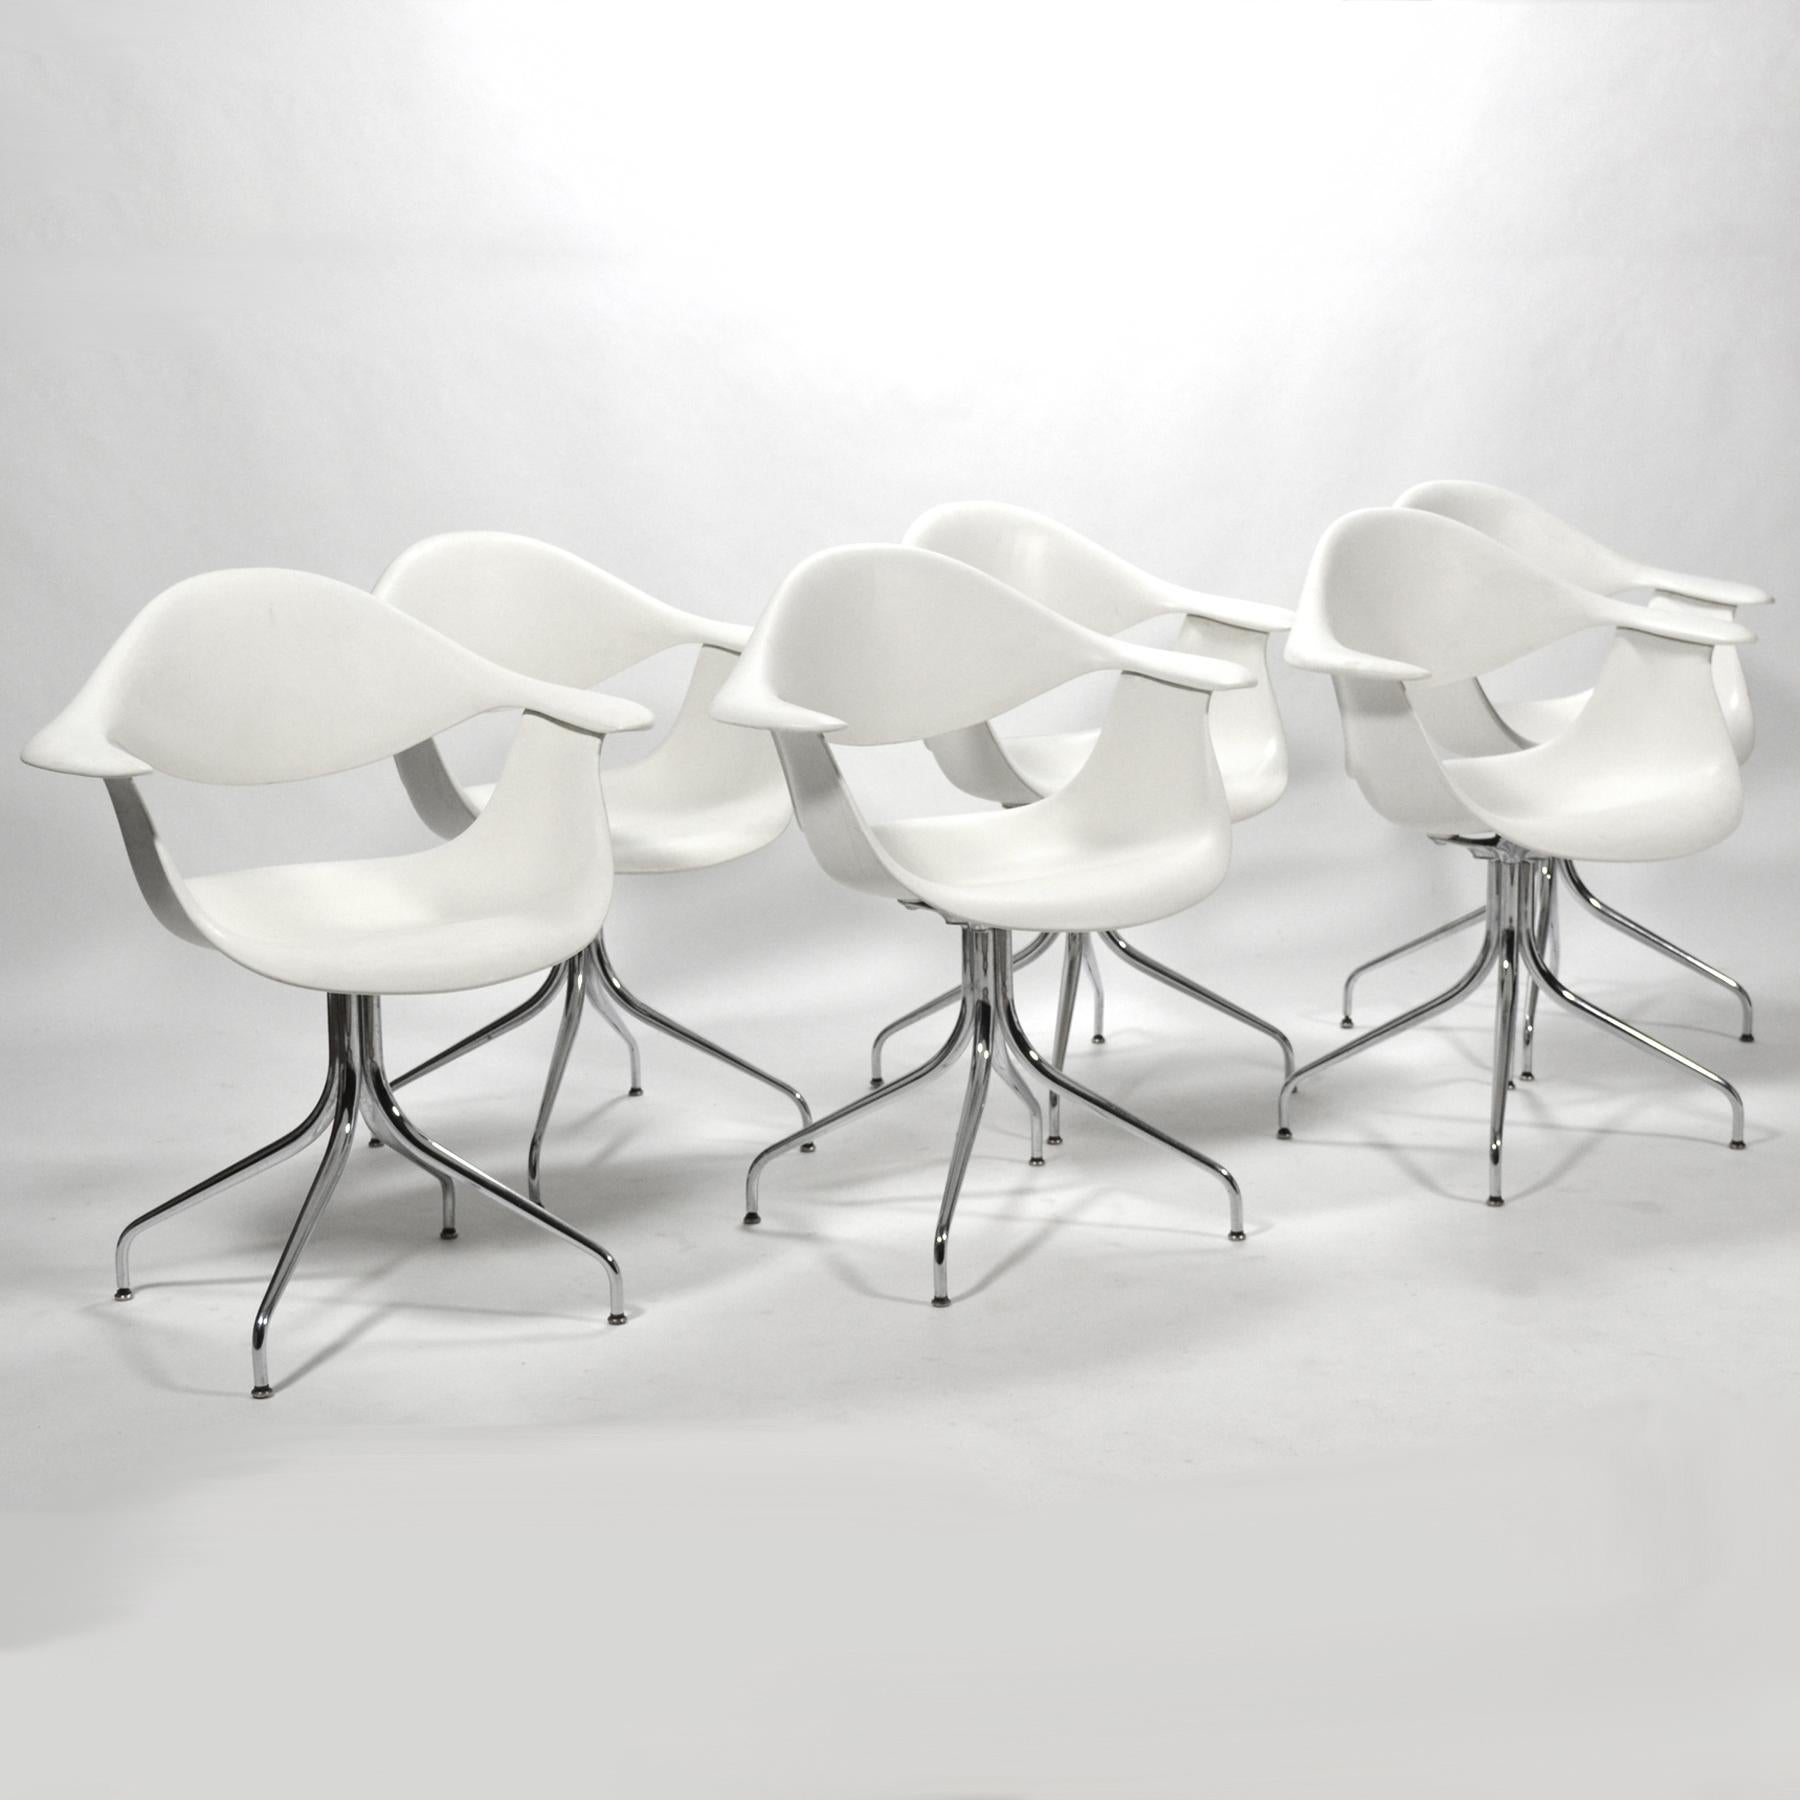 Les modèles de chaises à piétement traînant du bureau de George Nelson ont été conçus pour répondre à son désir de créer une chaise avec un beau piétement 